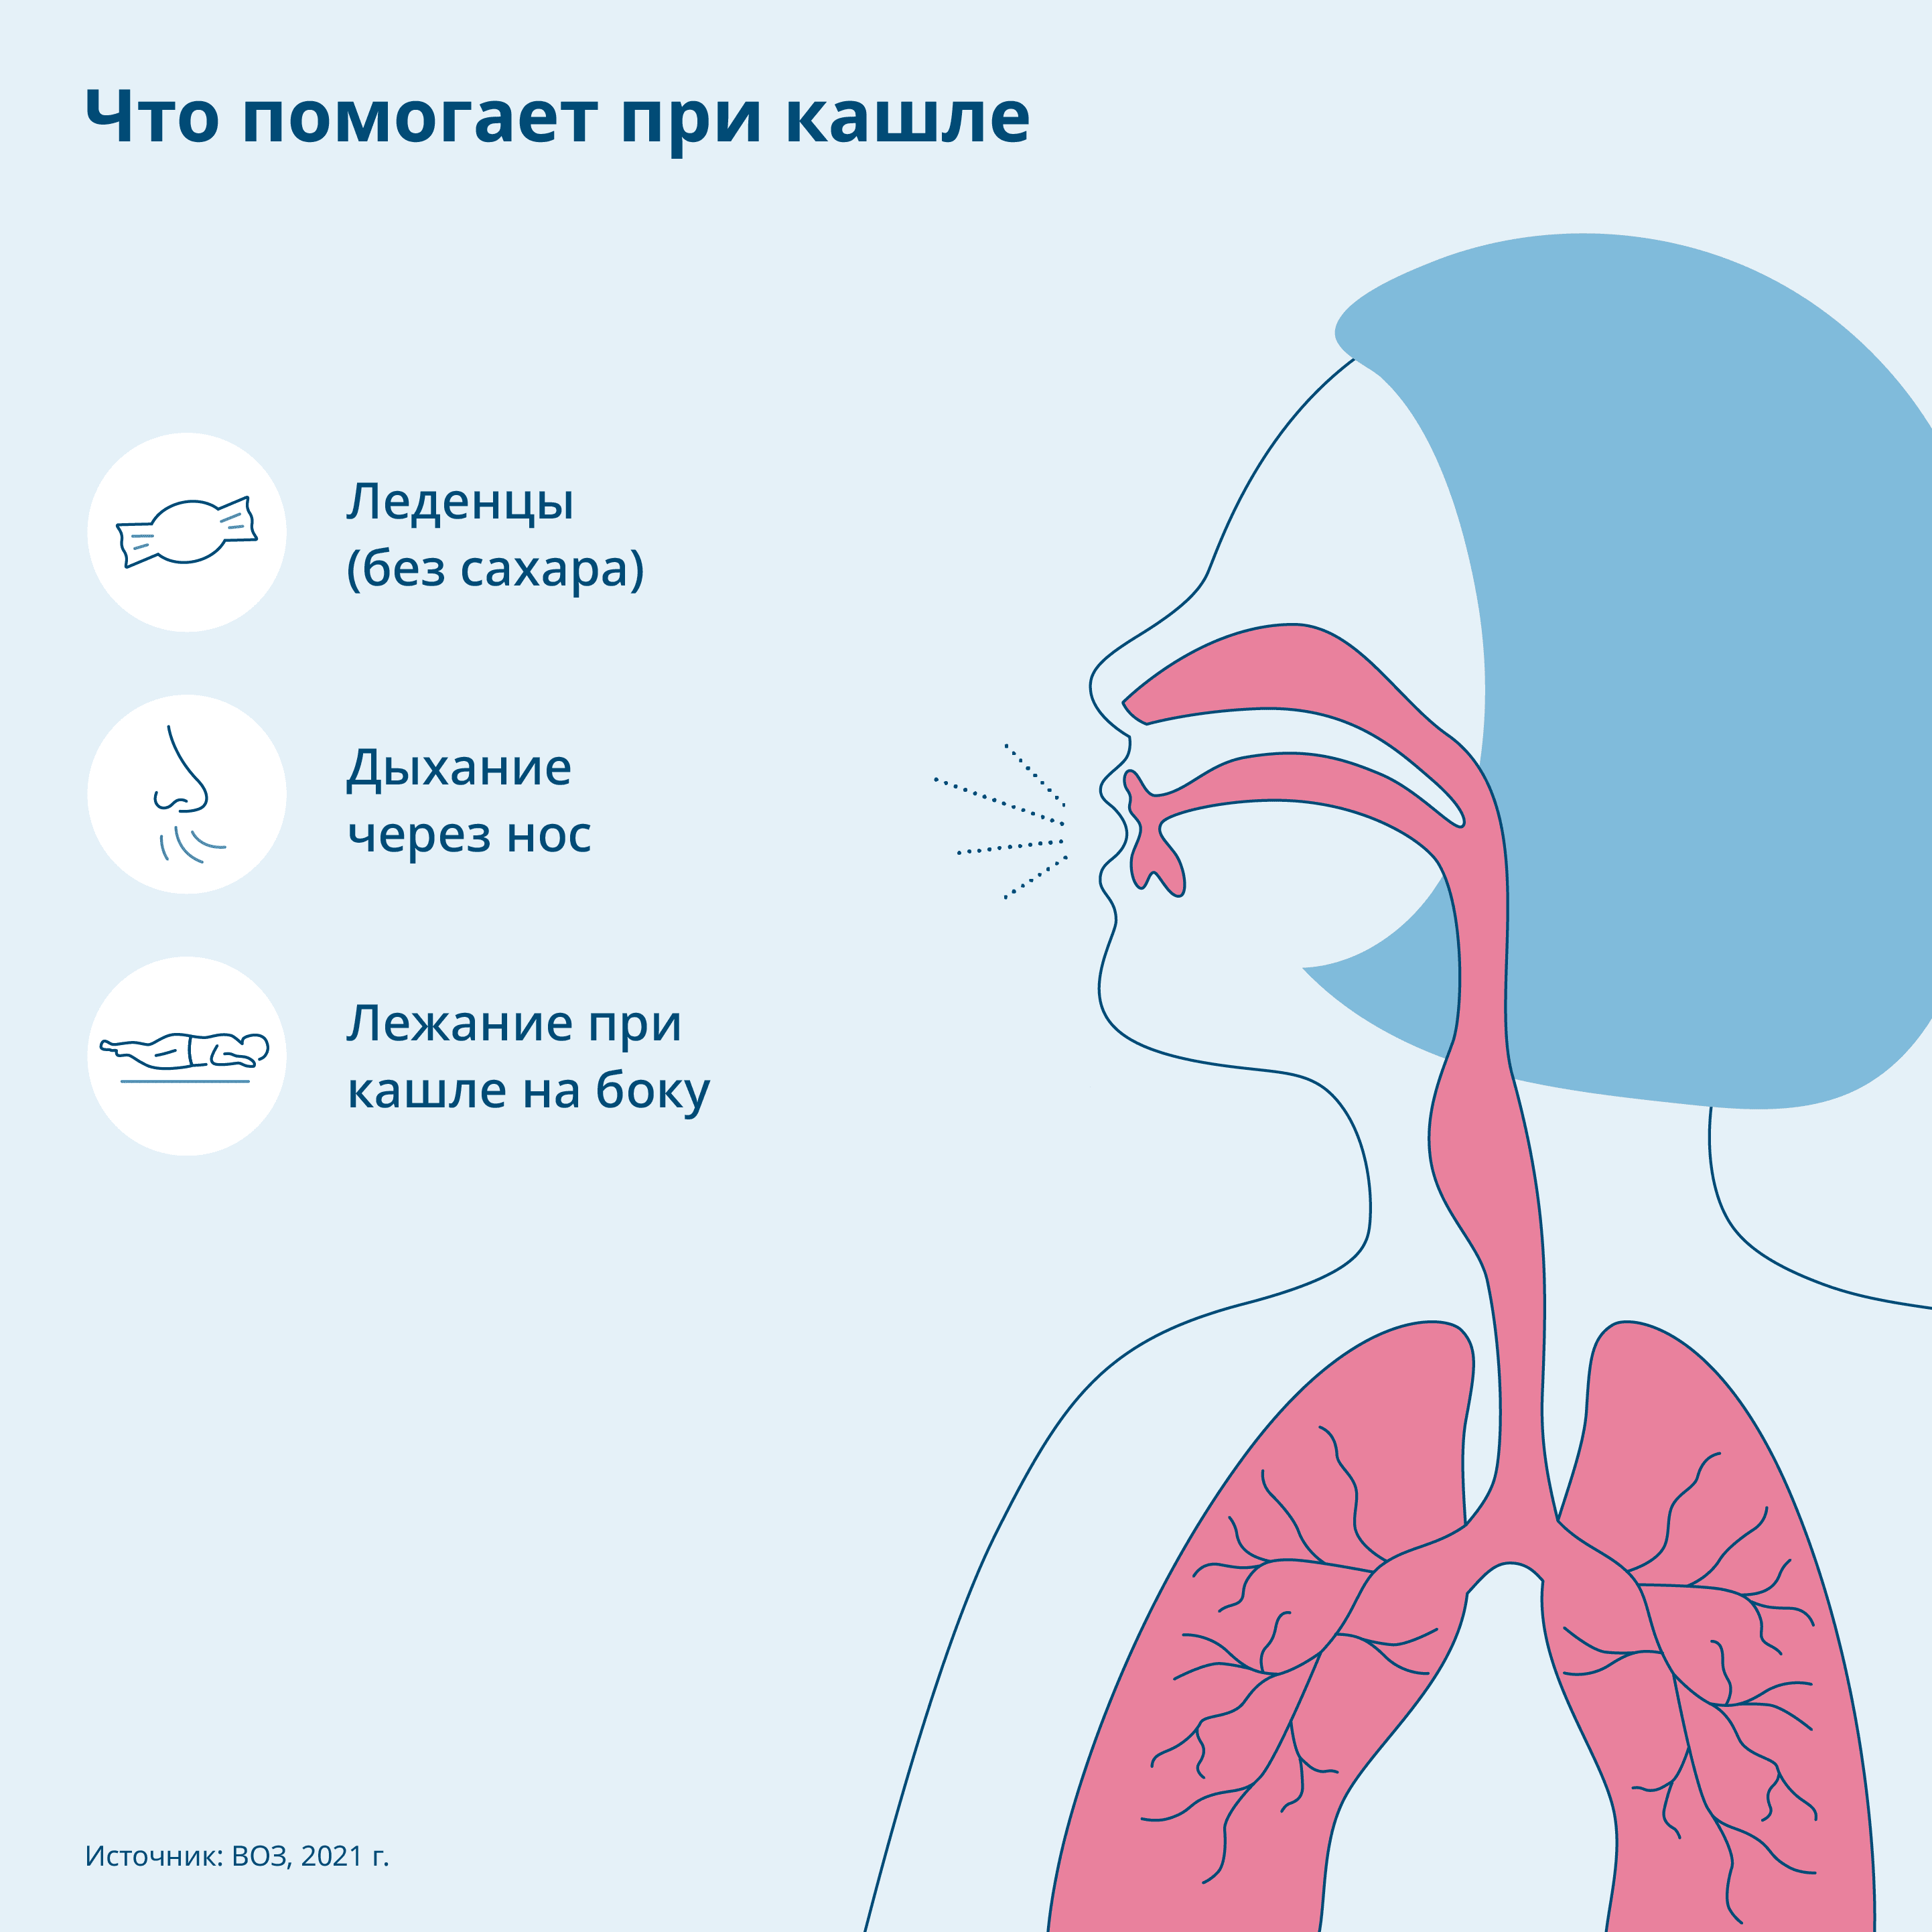 Графика: Советы по борьбе с кашлем, человеческое тело в разрезе с дыхательными путями